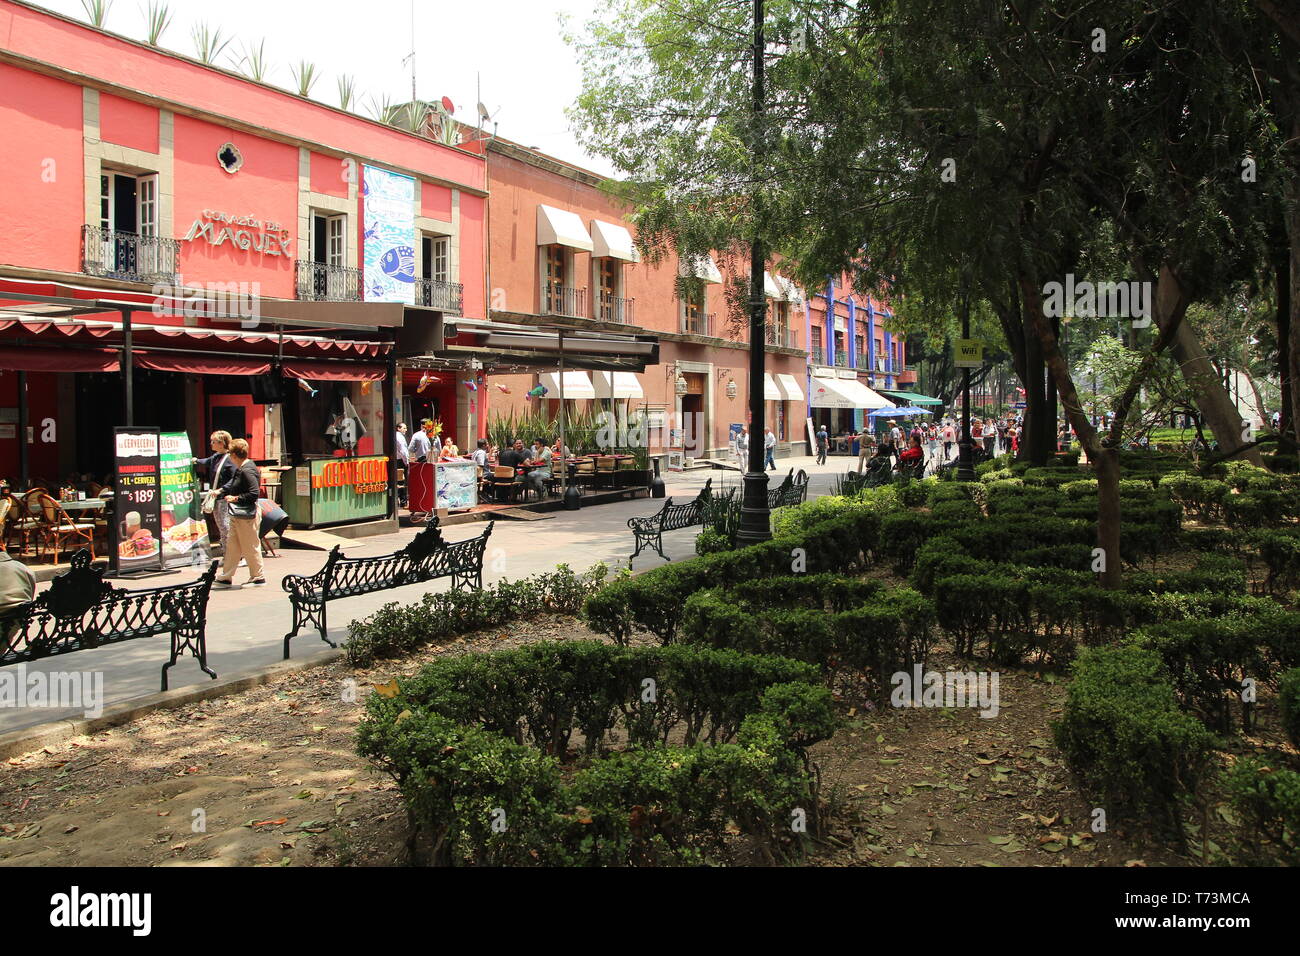 Coyoacan borough, Mexico city. Stock Photo